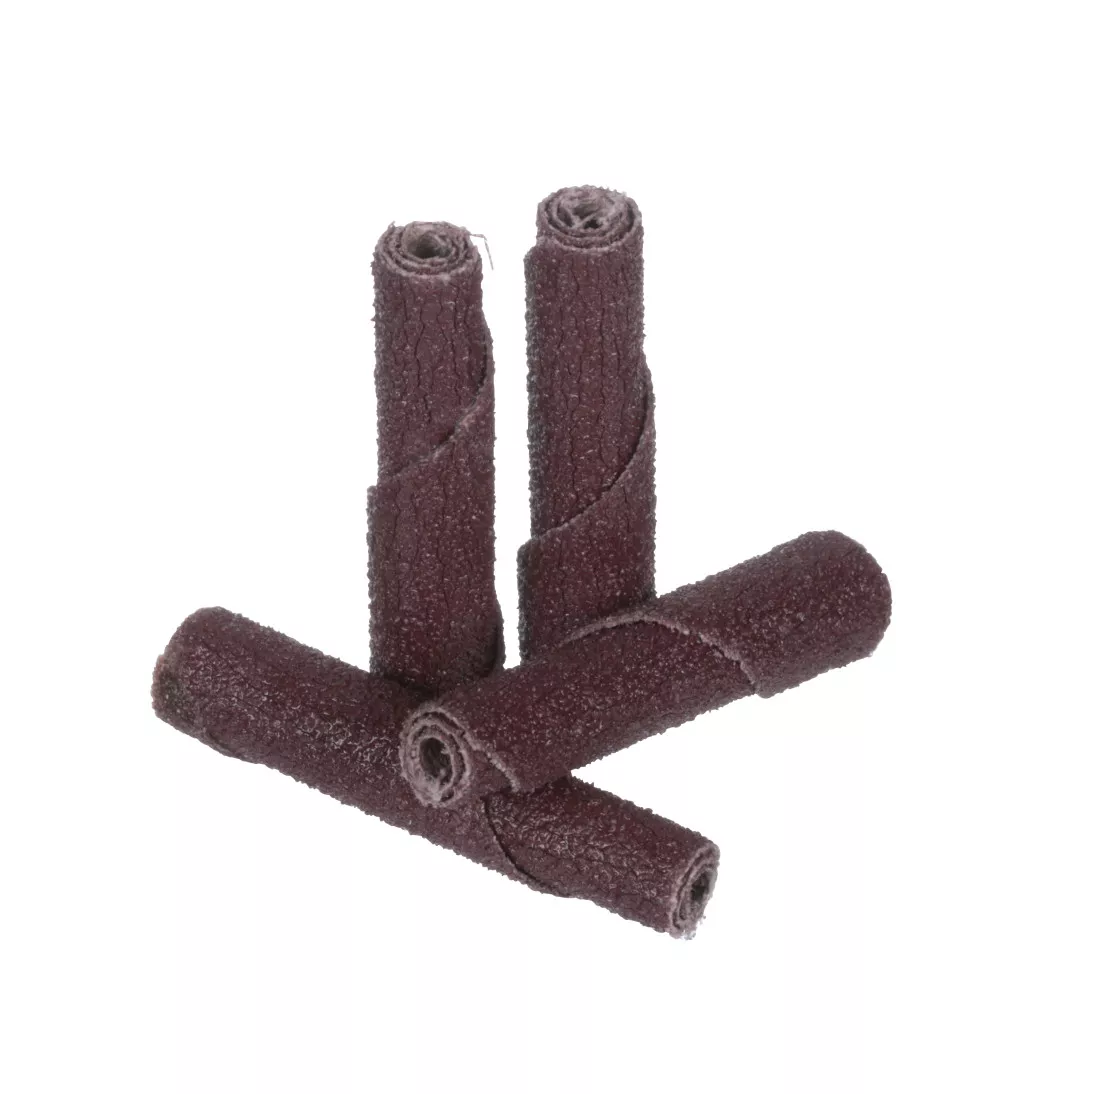 Standard Abrasives™ A/O Straight Cartridge Roll 713226, 3/8 in x 2 in x
1/8 in 60, 100 ea/Case